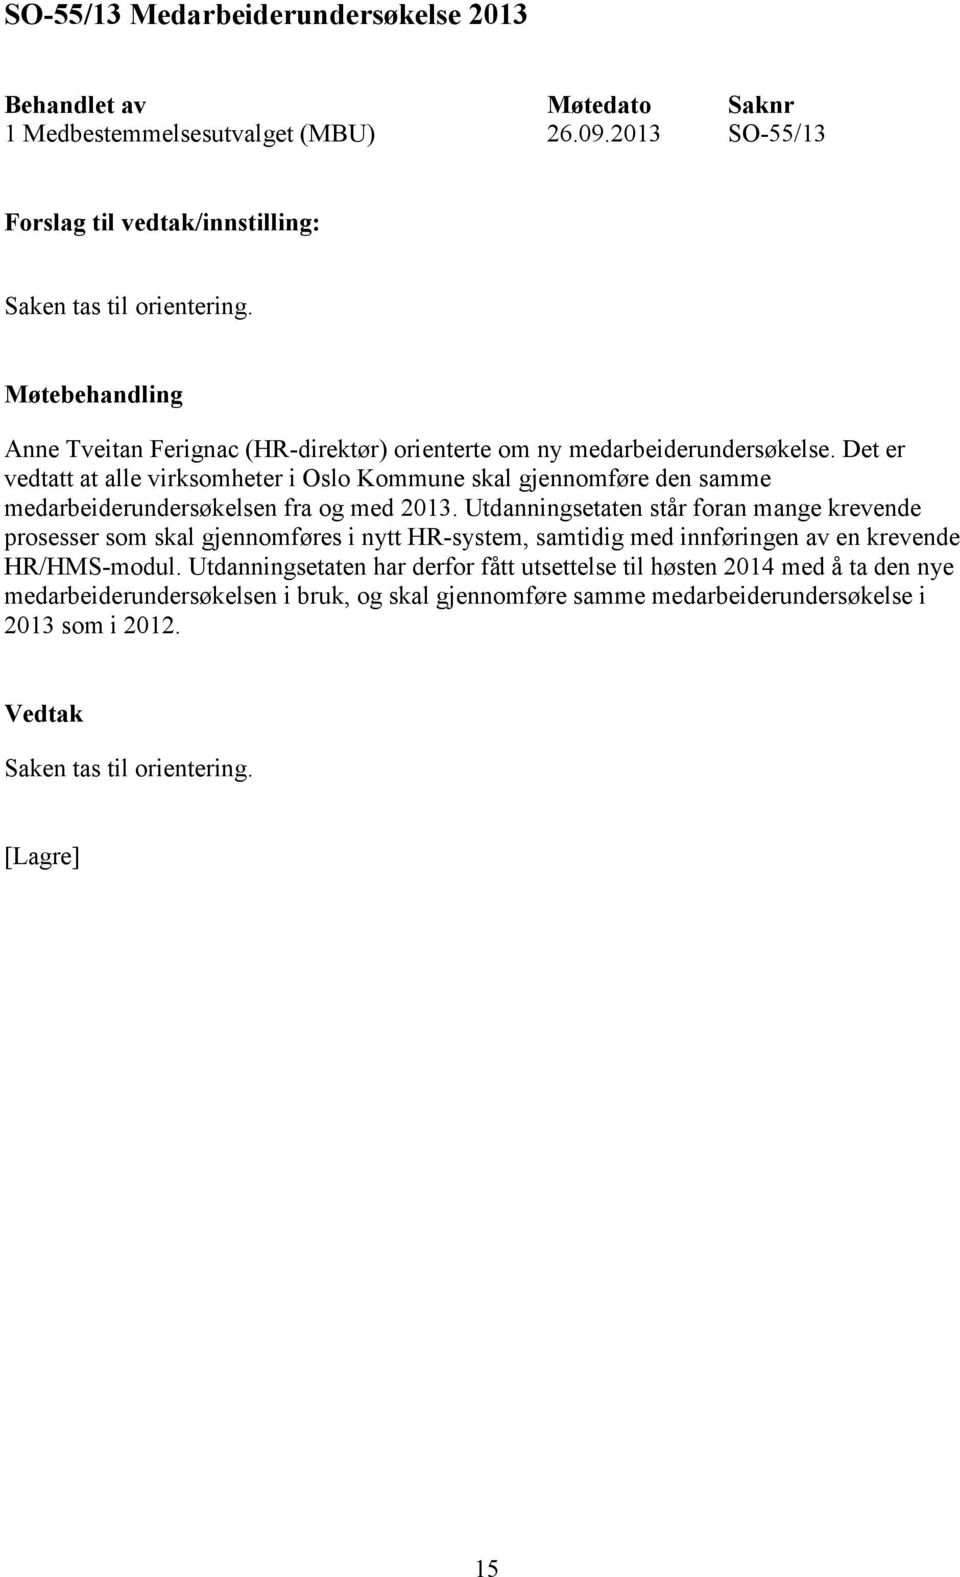 Det er vedtatt at alle virksomheter i Oslo Kommune skal gjennomføre den samme medarbeiderundersøkelsen fra og med 2013.